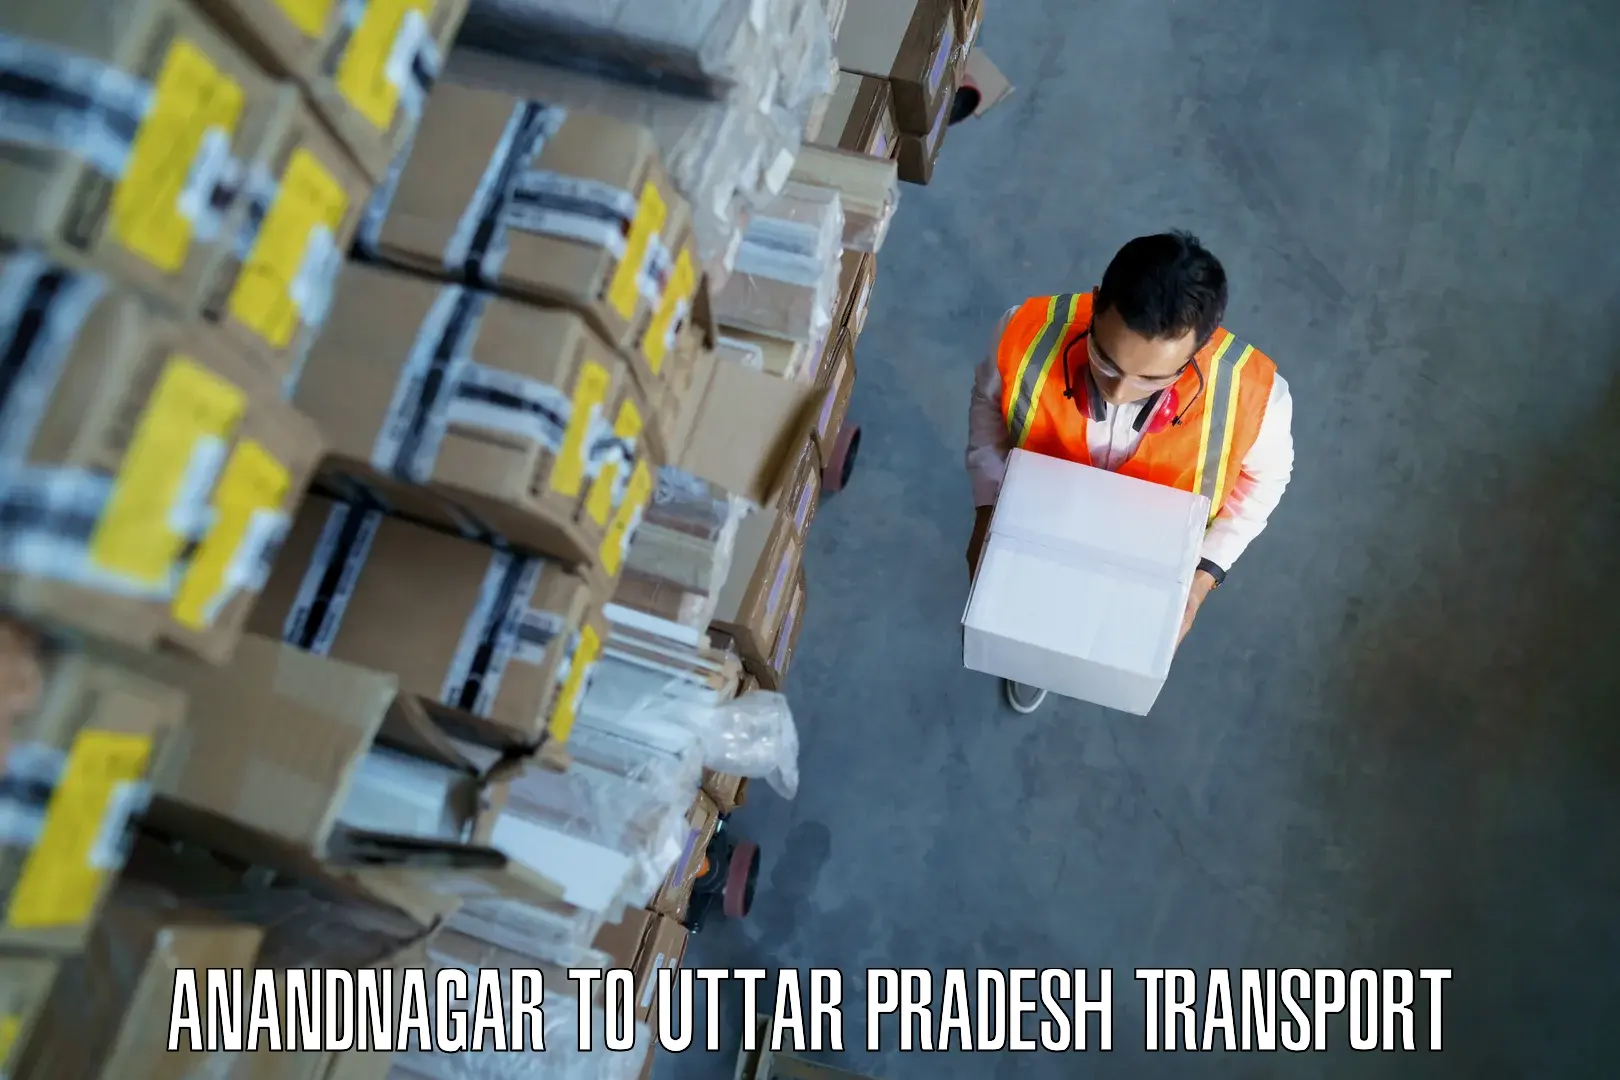 Truck transport companies in India Anandnagar to Uttar Pradesh